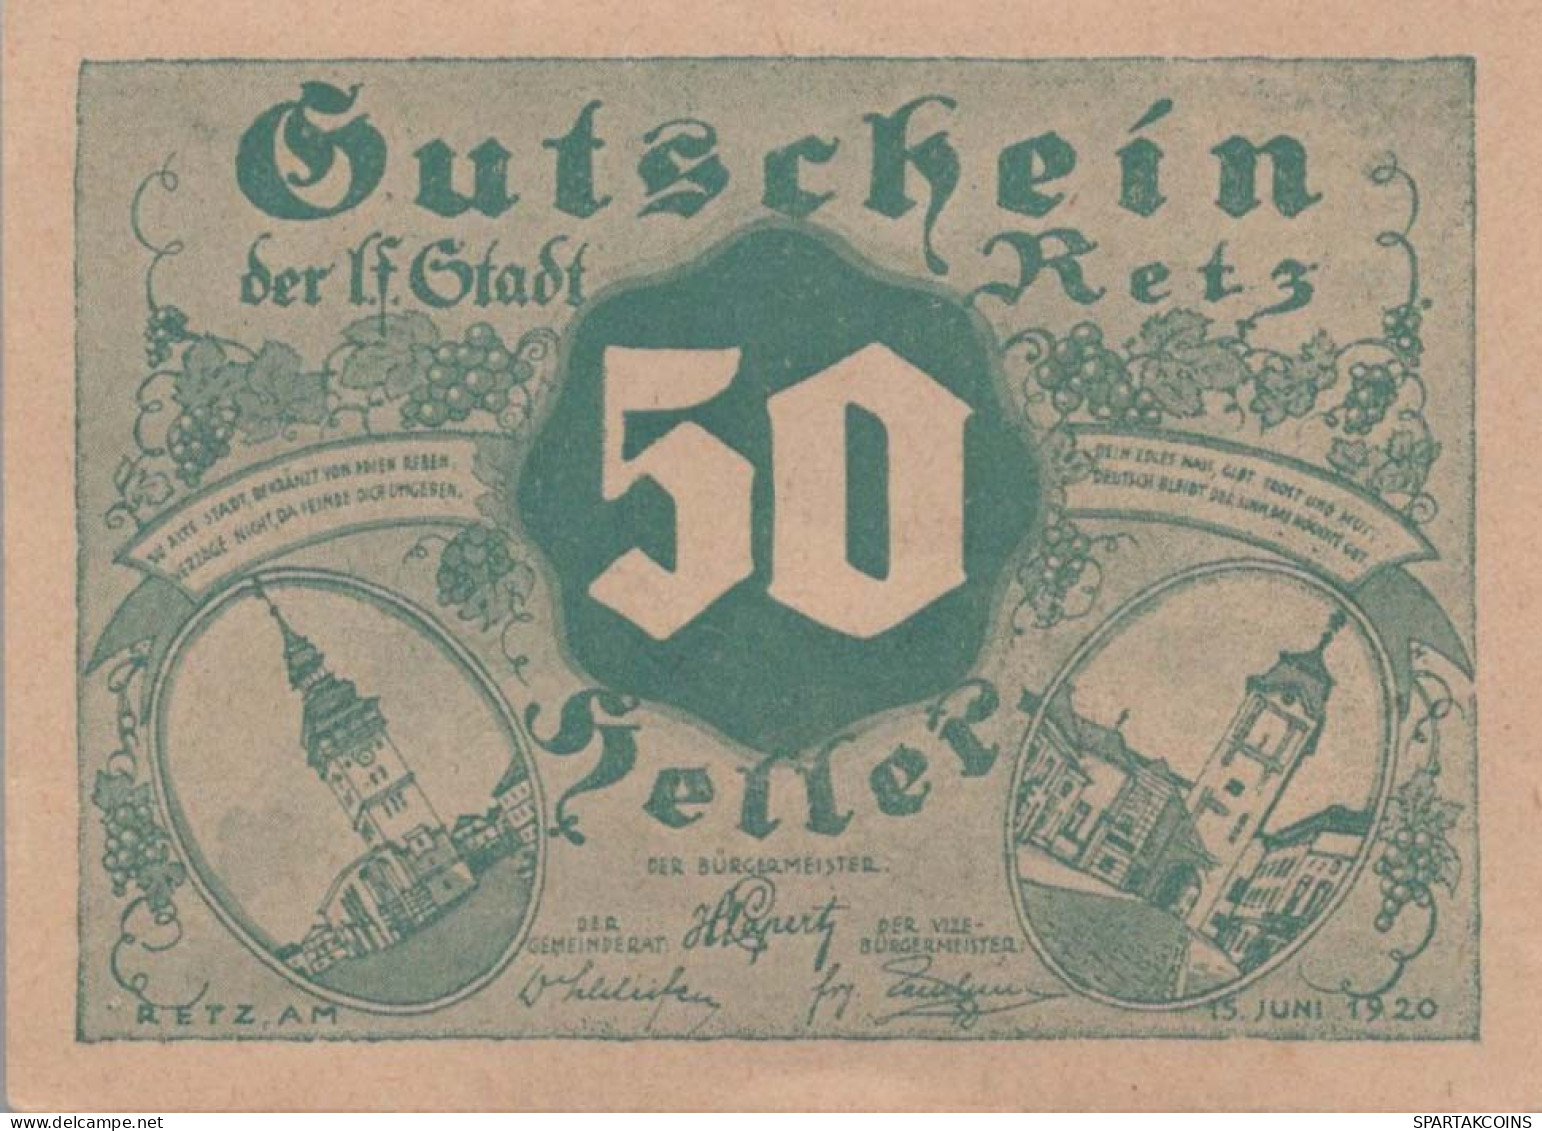 50 HELLER 1920 Stadt RETZ Niedrigeren Österreich Notgeld Banknote #PE595 - [11] Emissions Locales